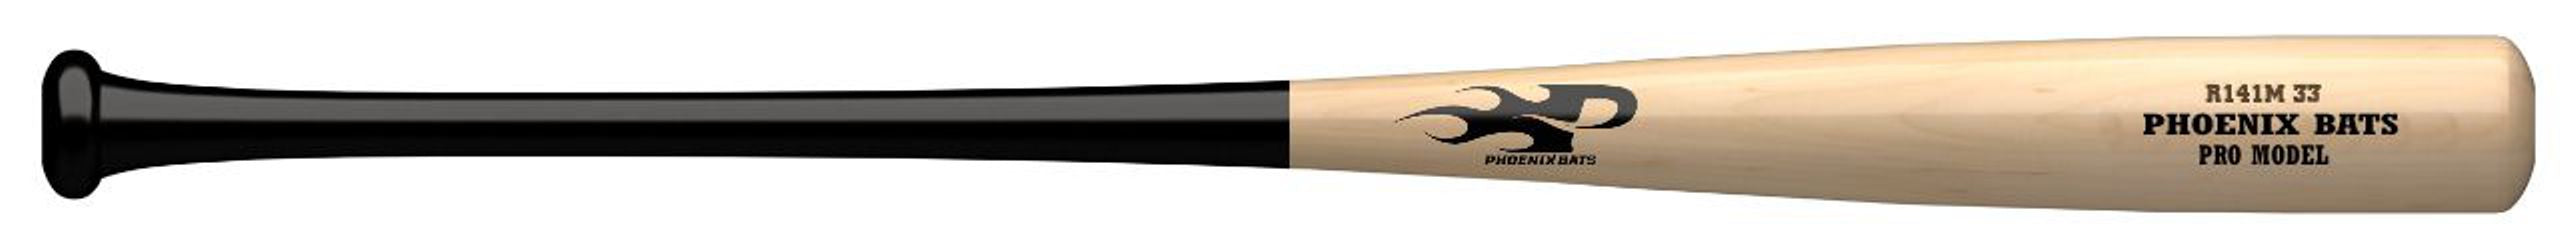 Phoenix Bats - R141M - Pro Model Maple Bat